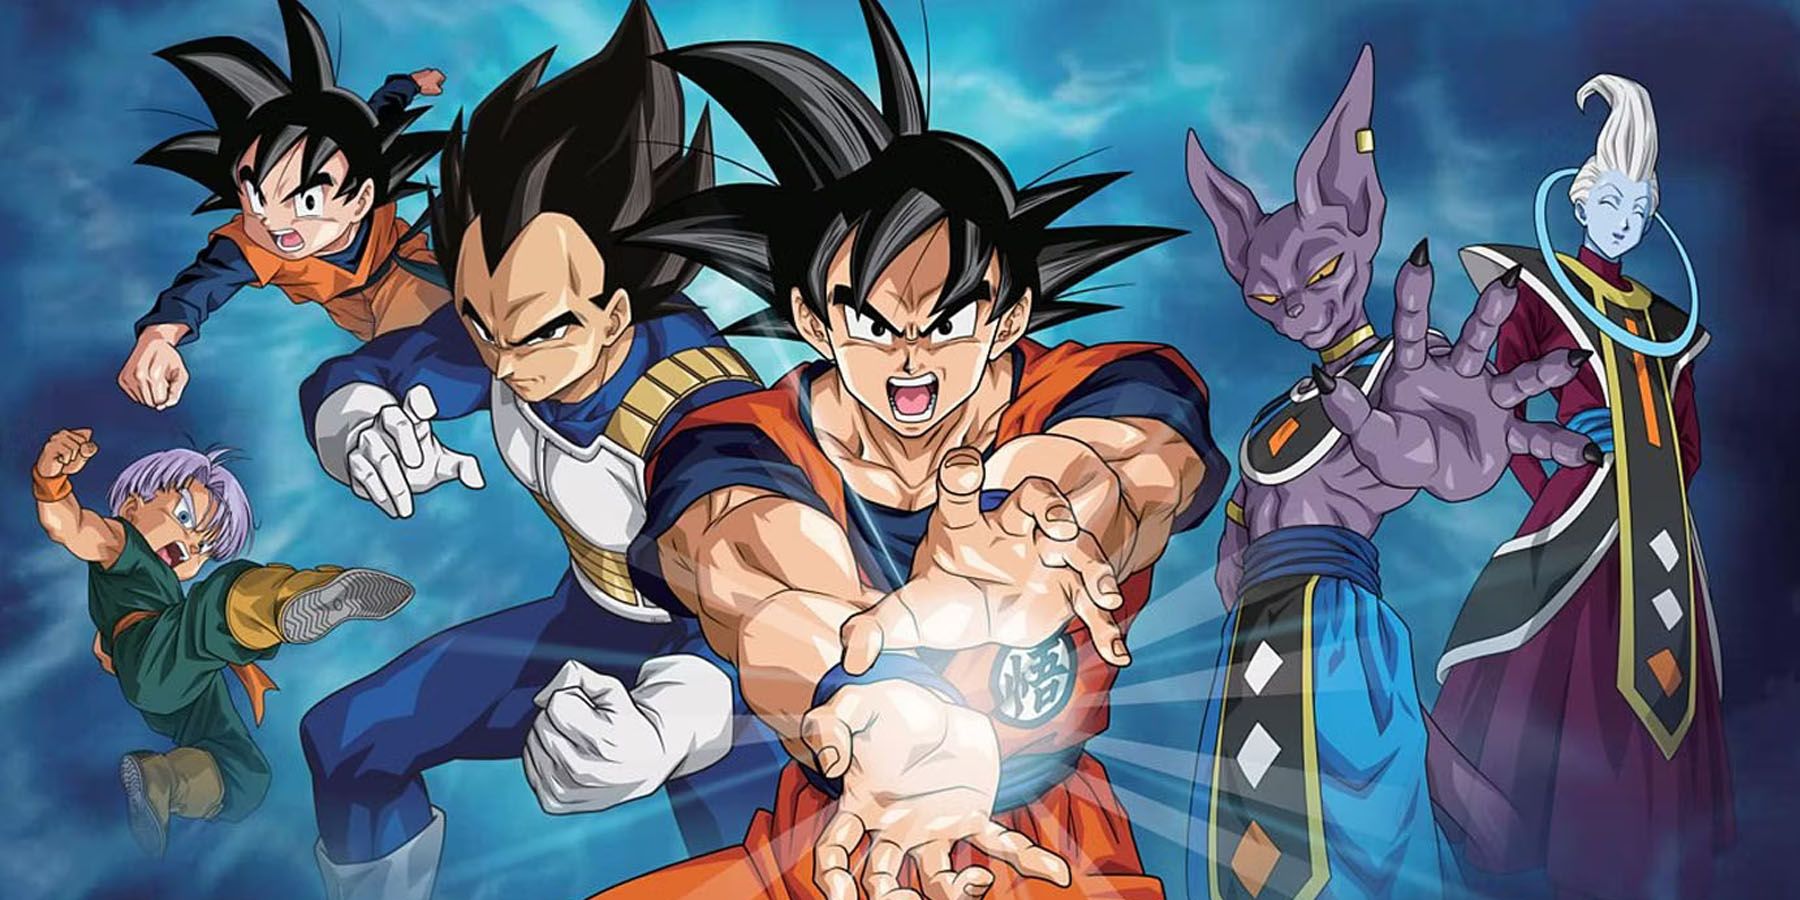 Uma imagem promocional de Dragon Ball Super apresentando Goku, Vegeta, Beerus e outros personagens contra um fundo azul.